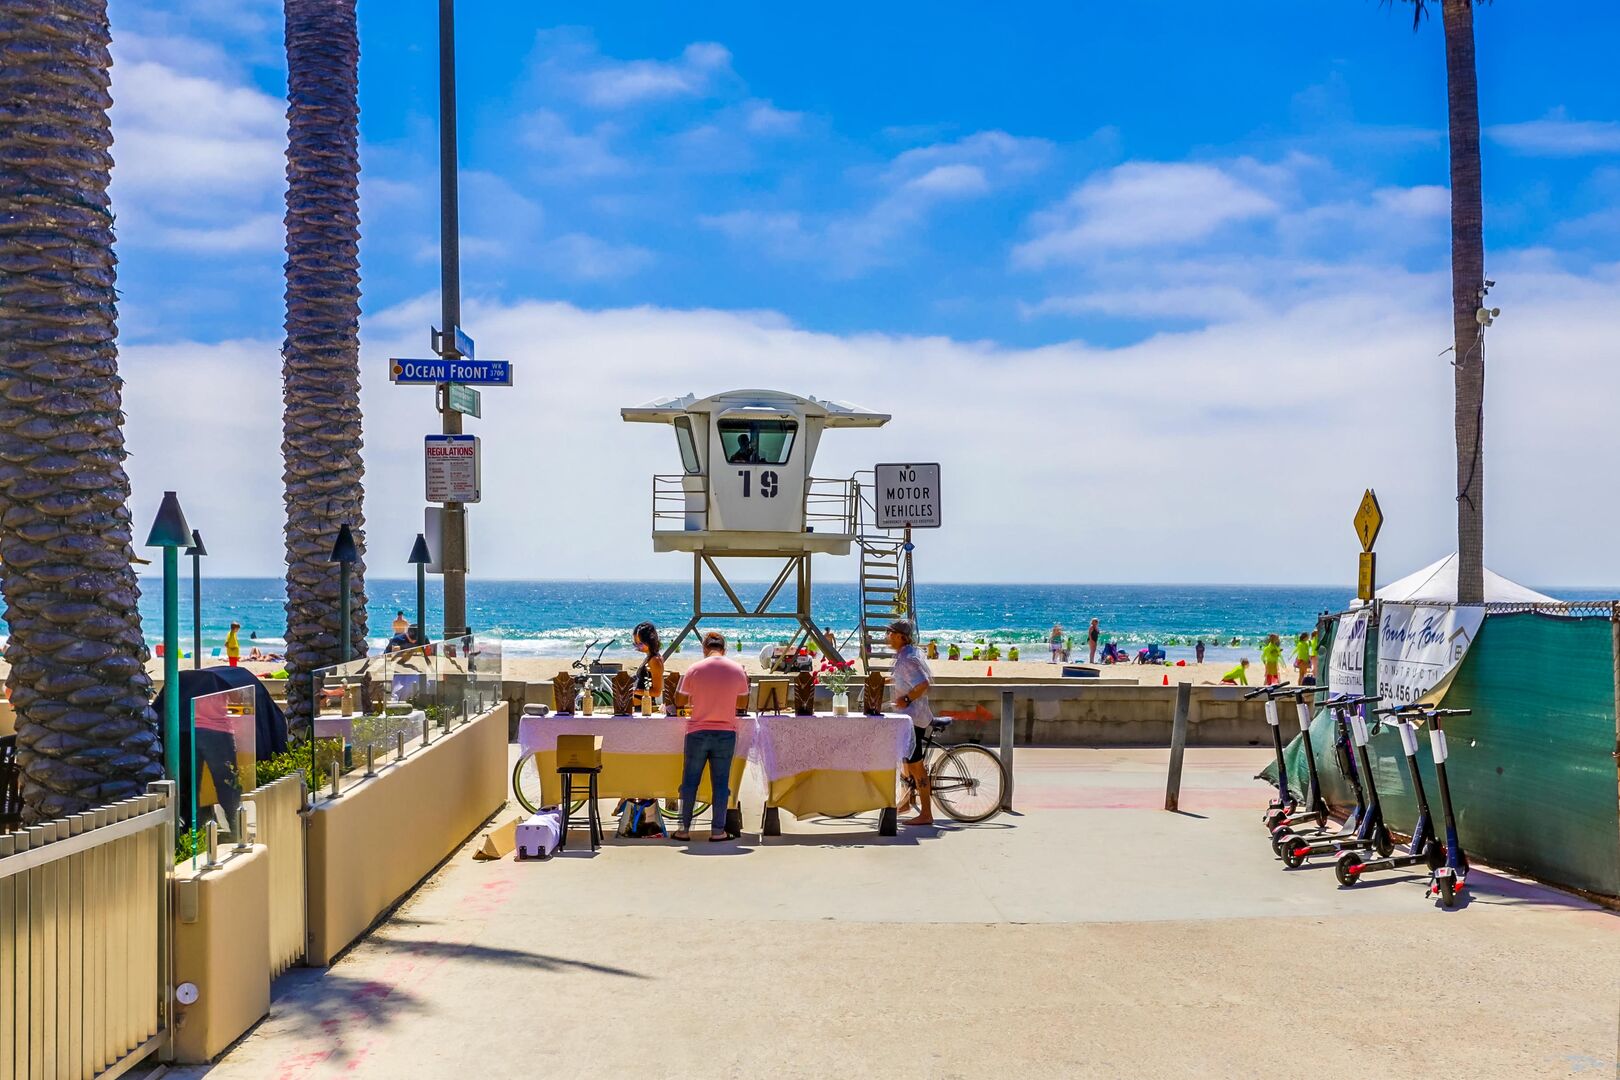 View of boardwalk, beach and lifeguard tower at Santa Clara Pl.